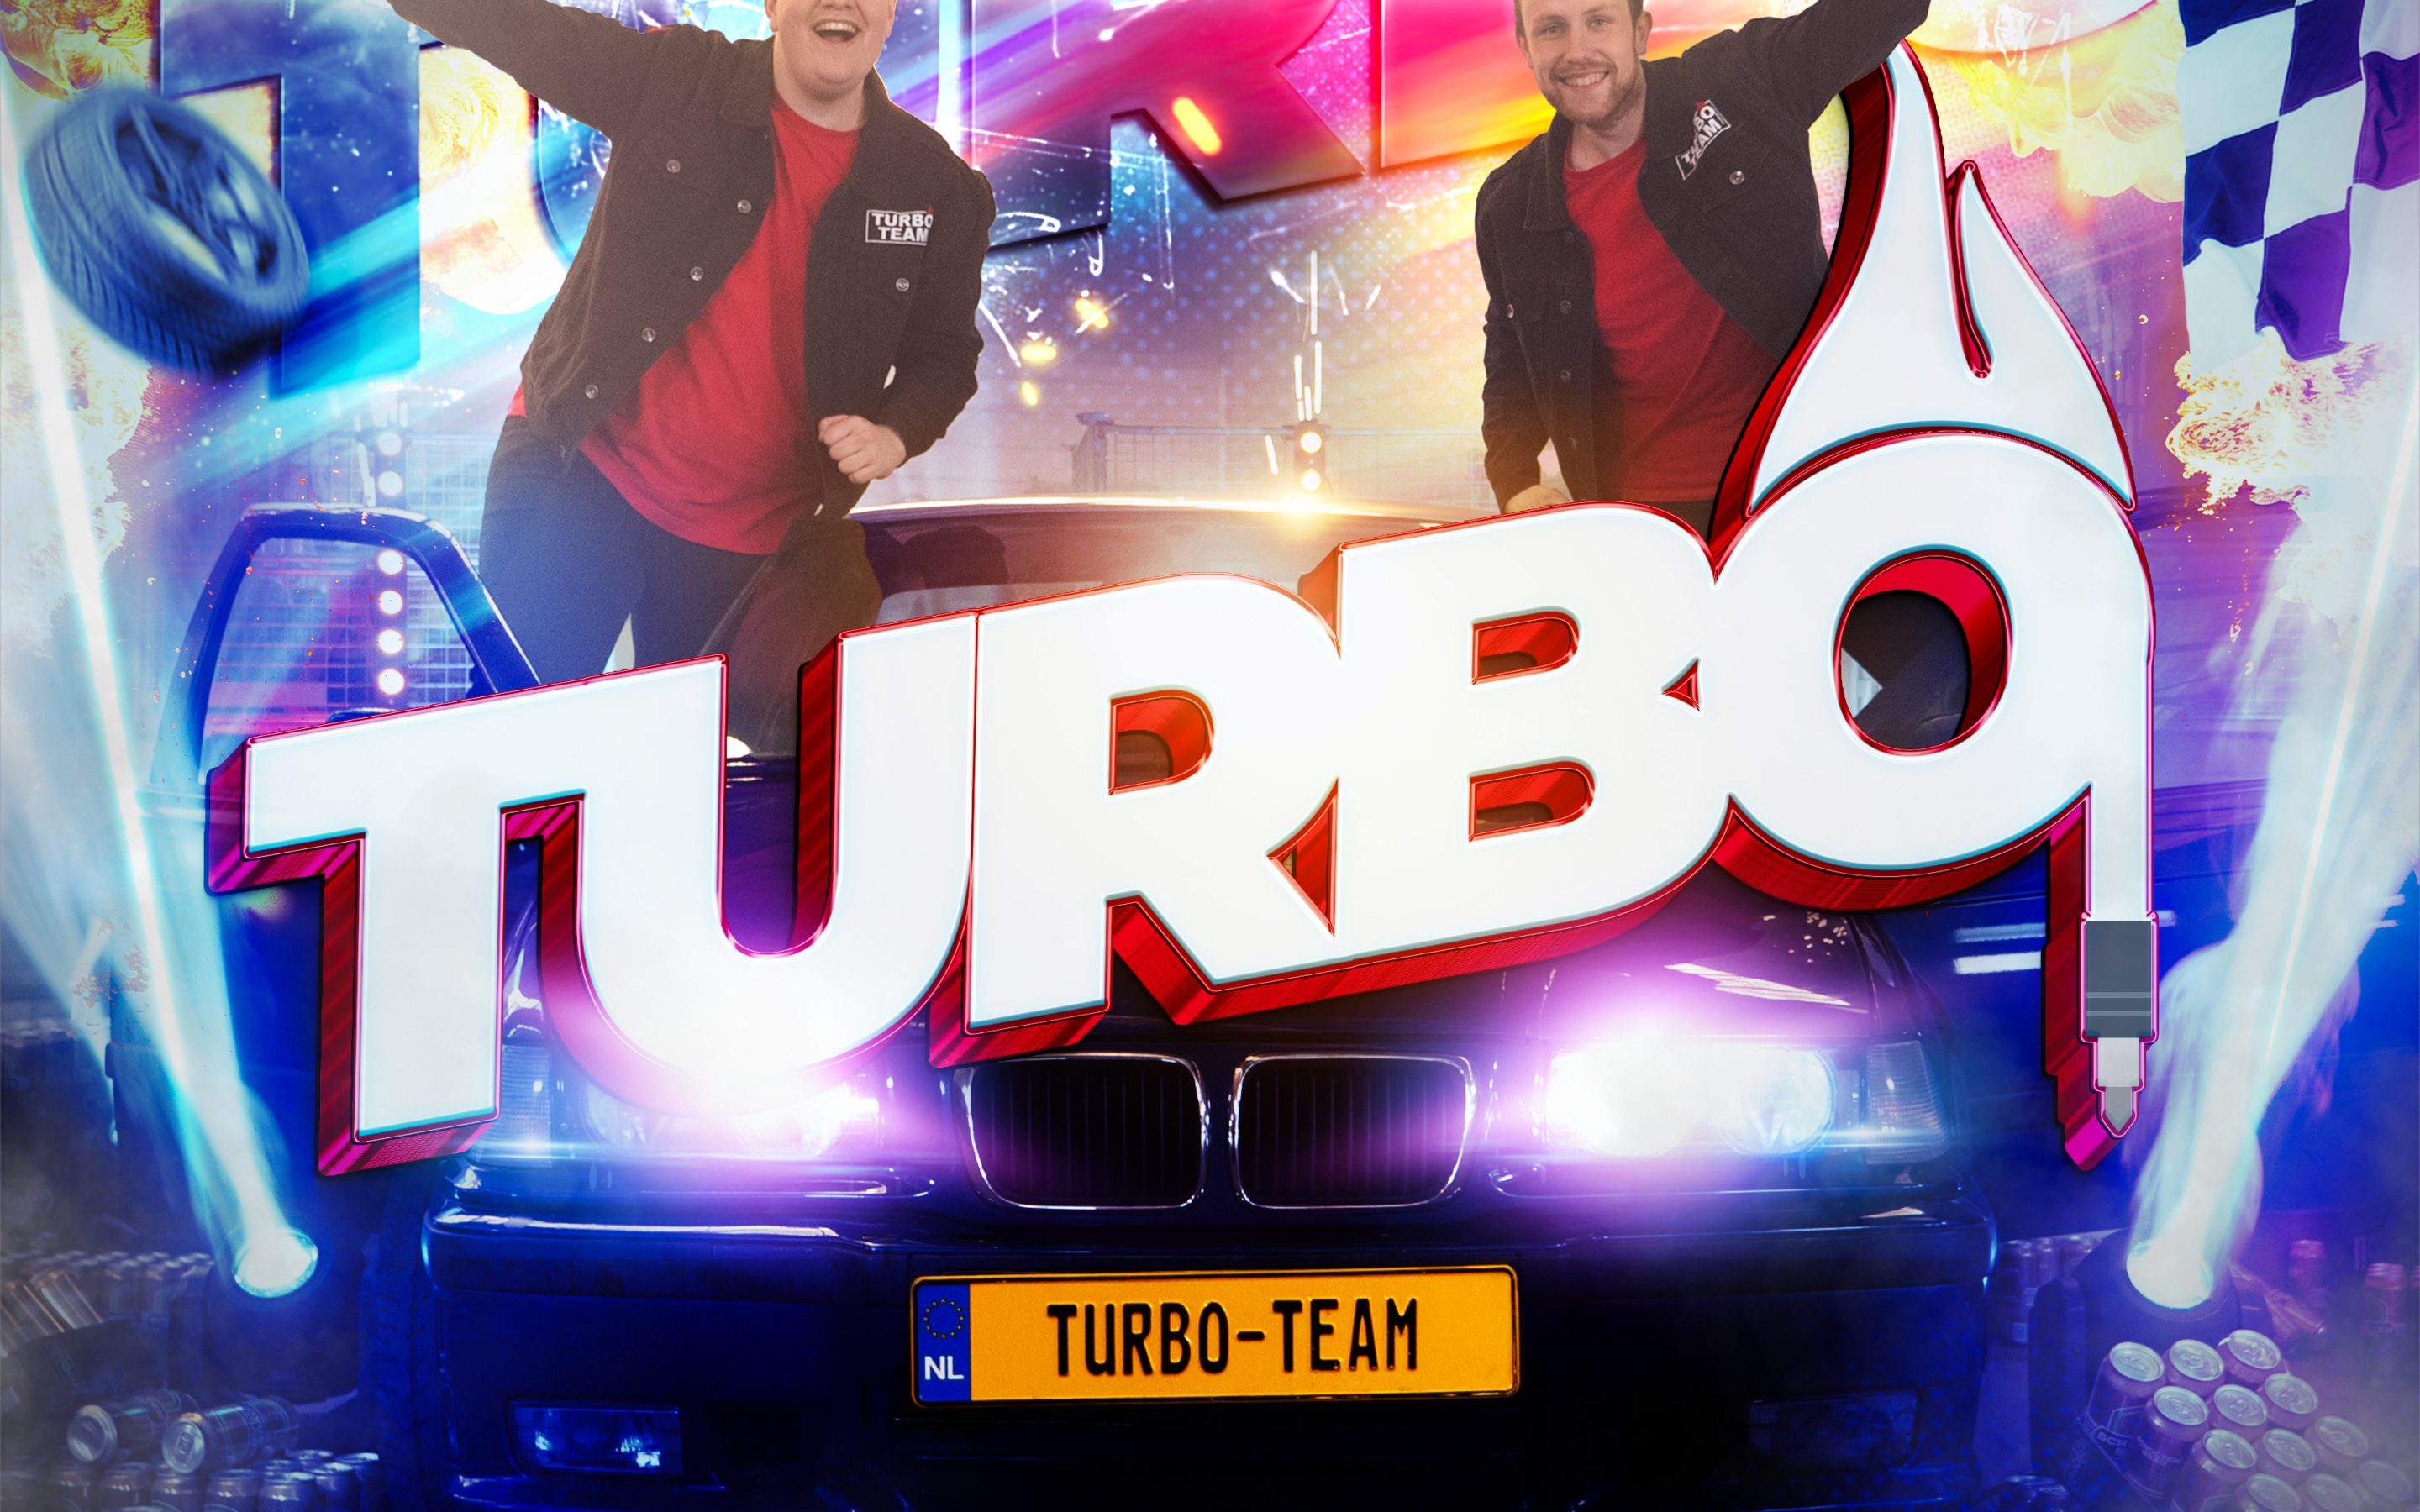 Turbo-Team – TURBO